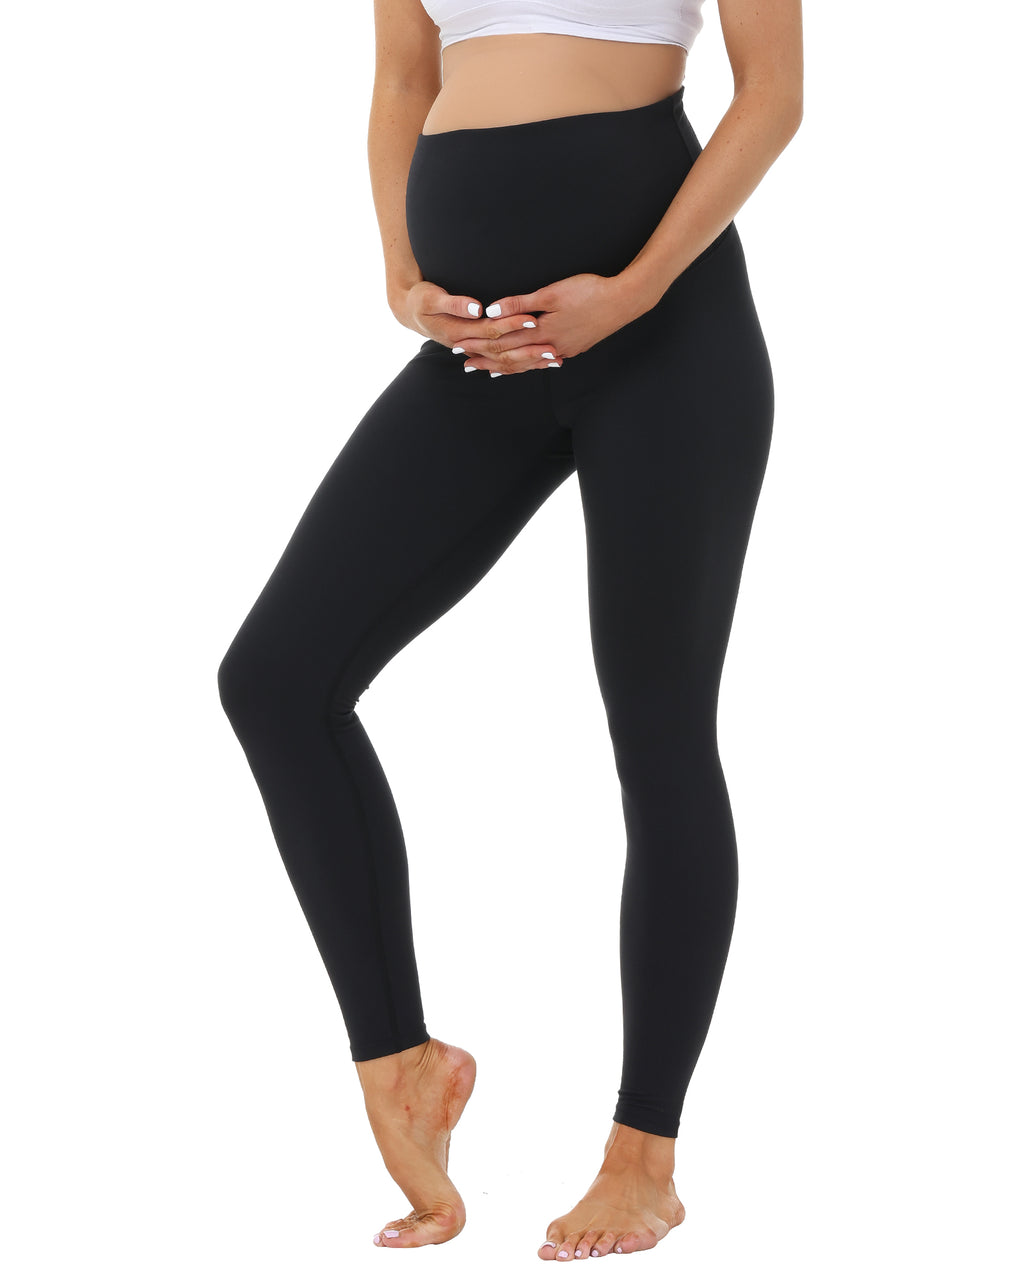  Maternity Leggings Dark Gray Leggings Women Thermal